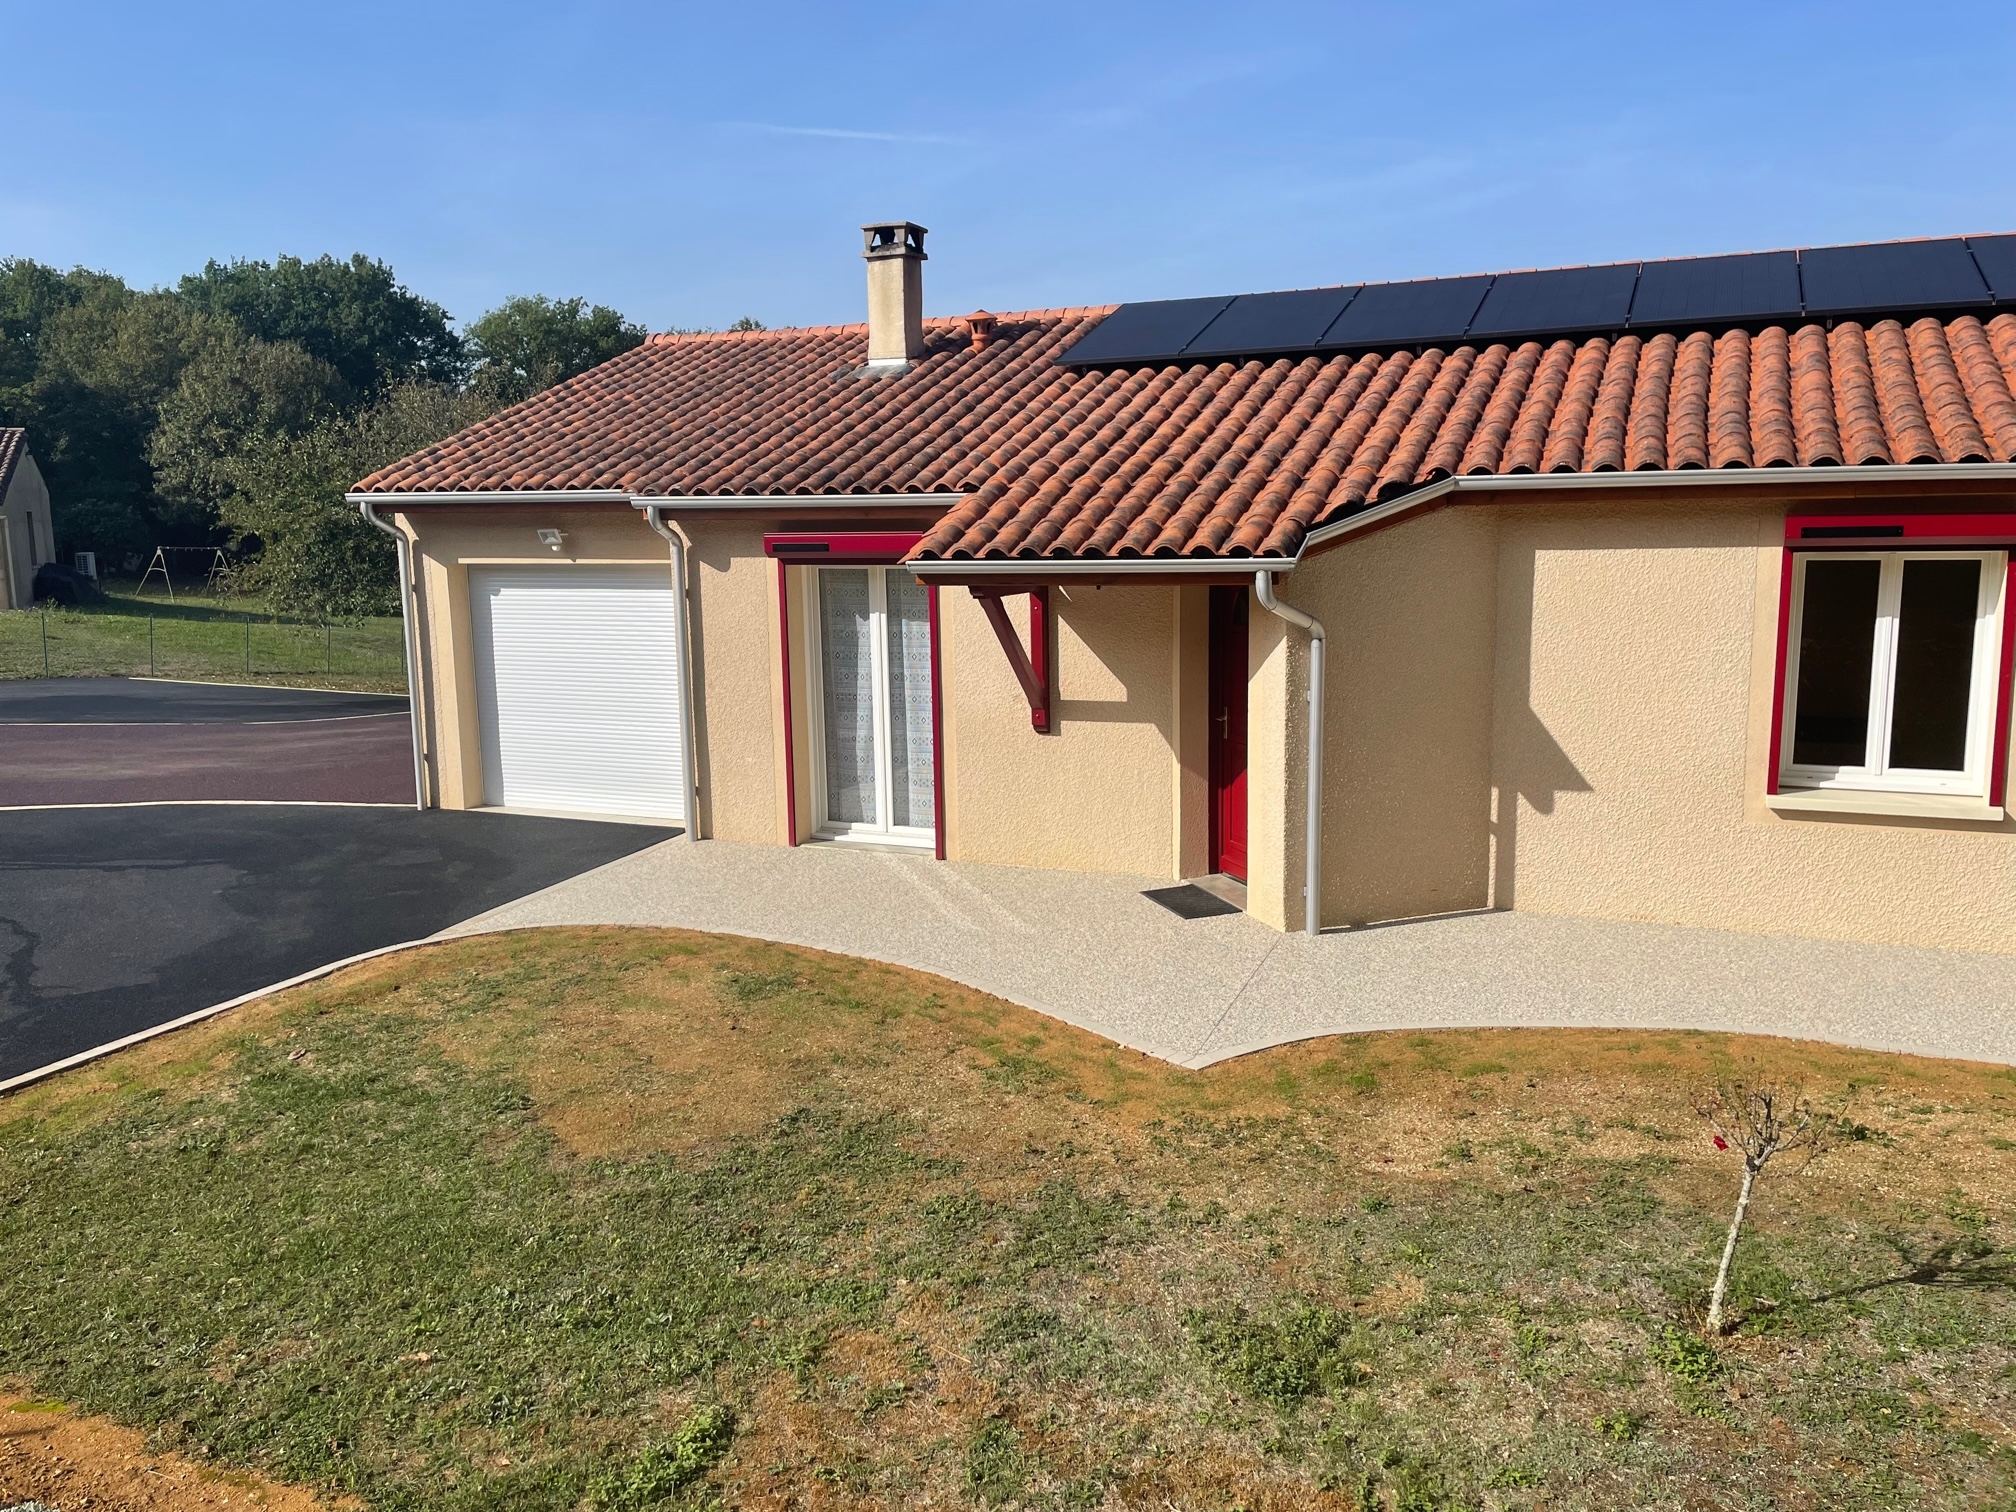 Cration Entre de maison en enrob  chaud et Hydrostar - Dordogne conue le 06/10/2022